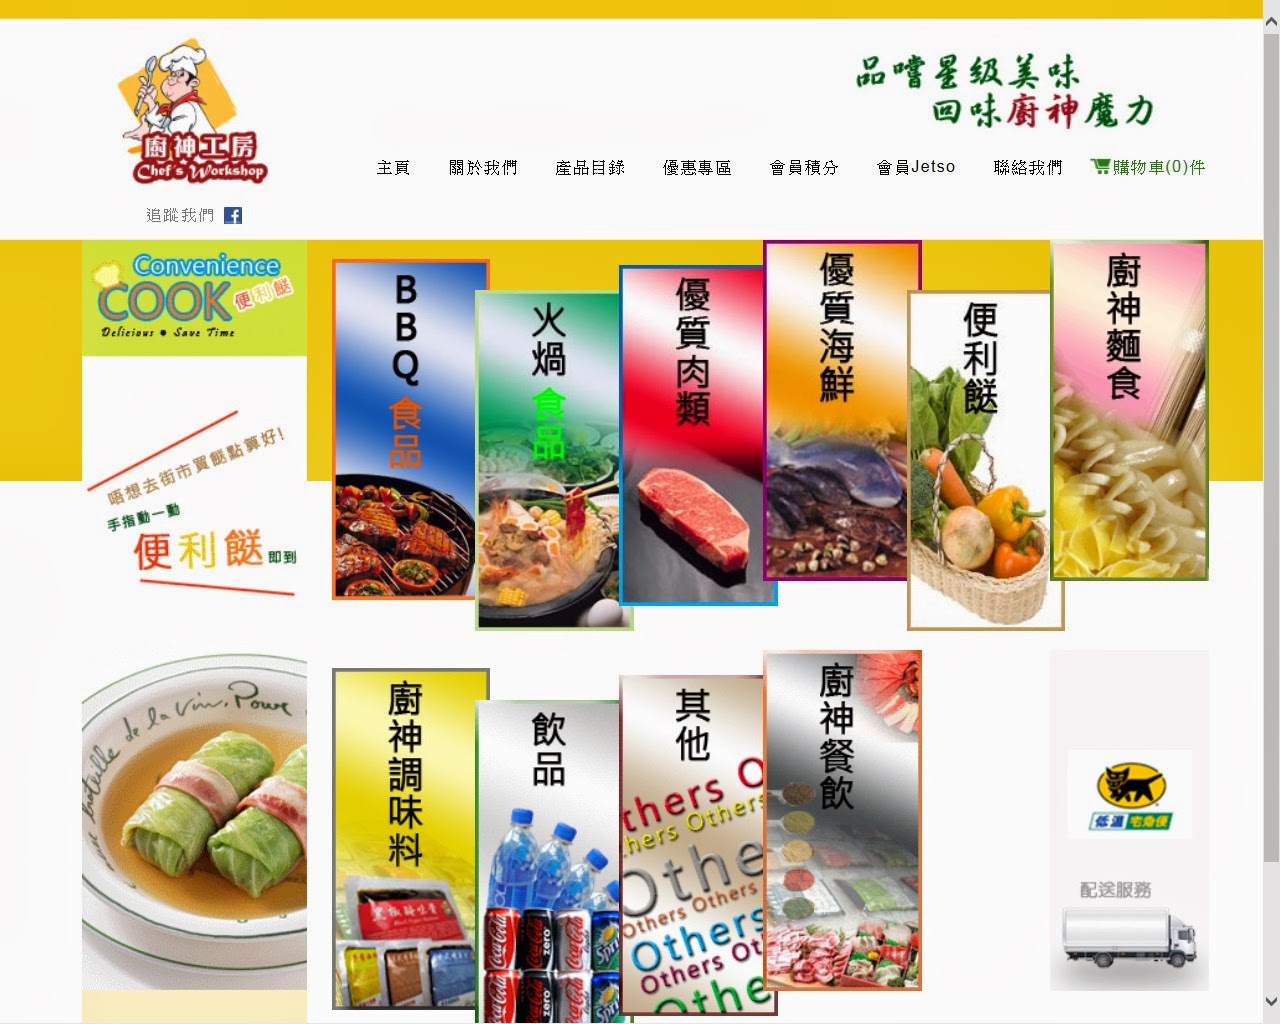 http://www.chefsworkshop.com.hk/index.php